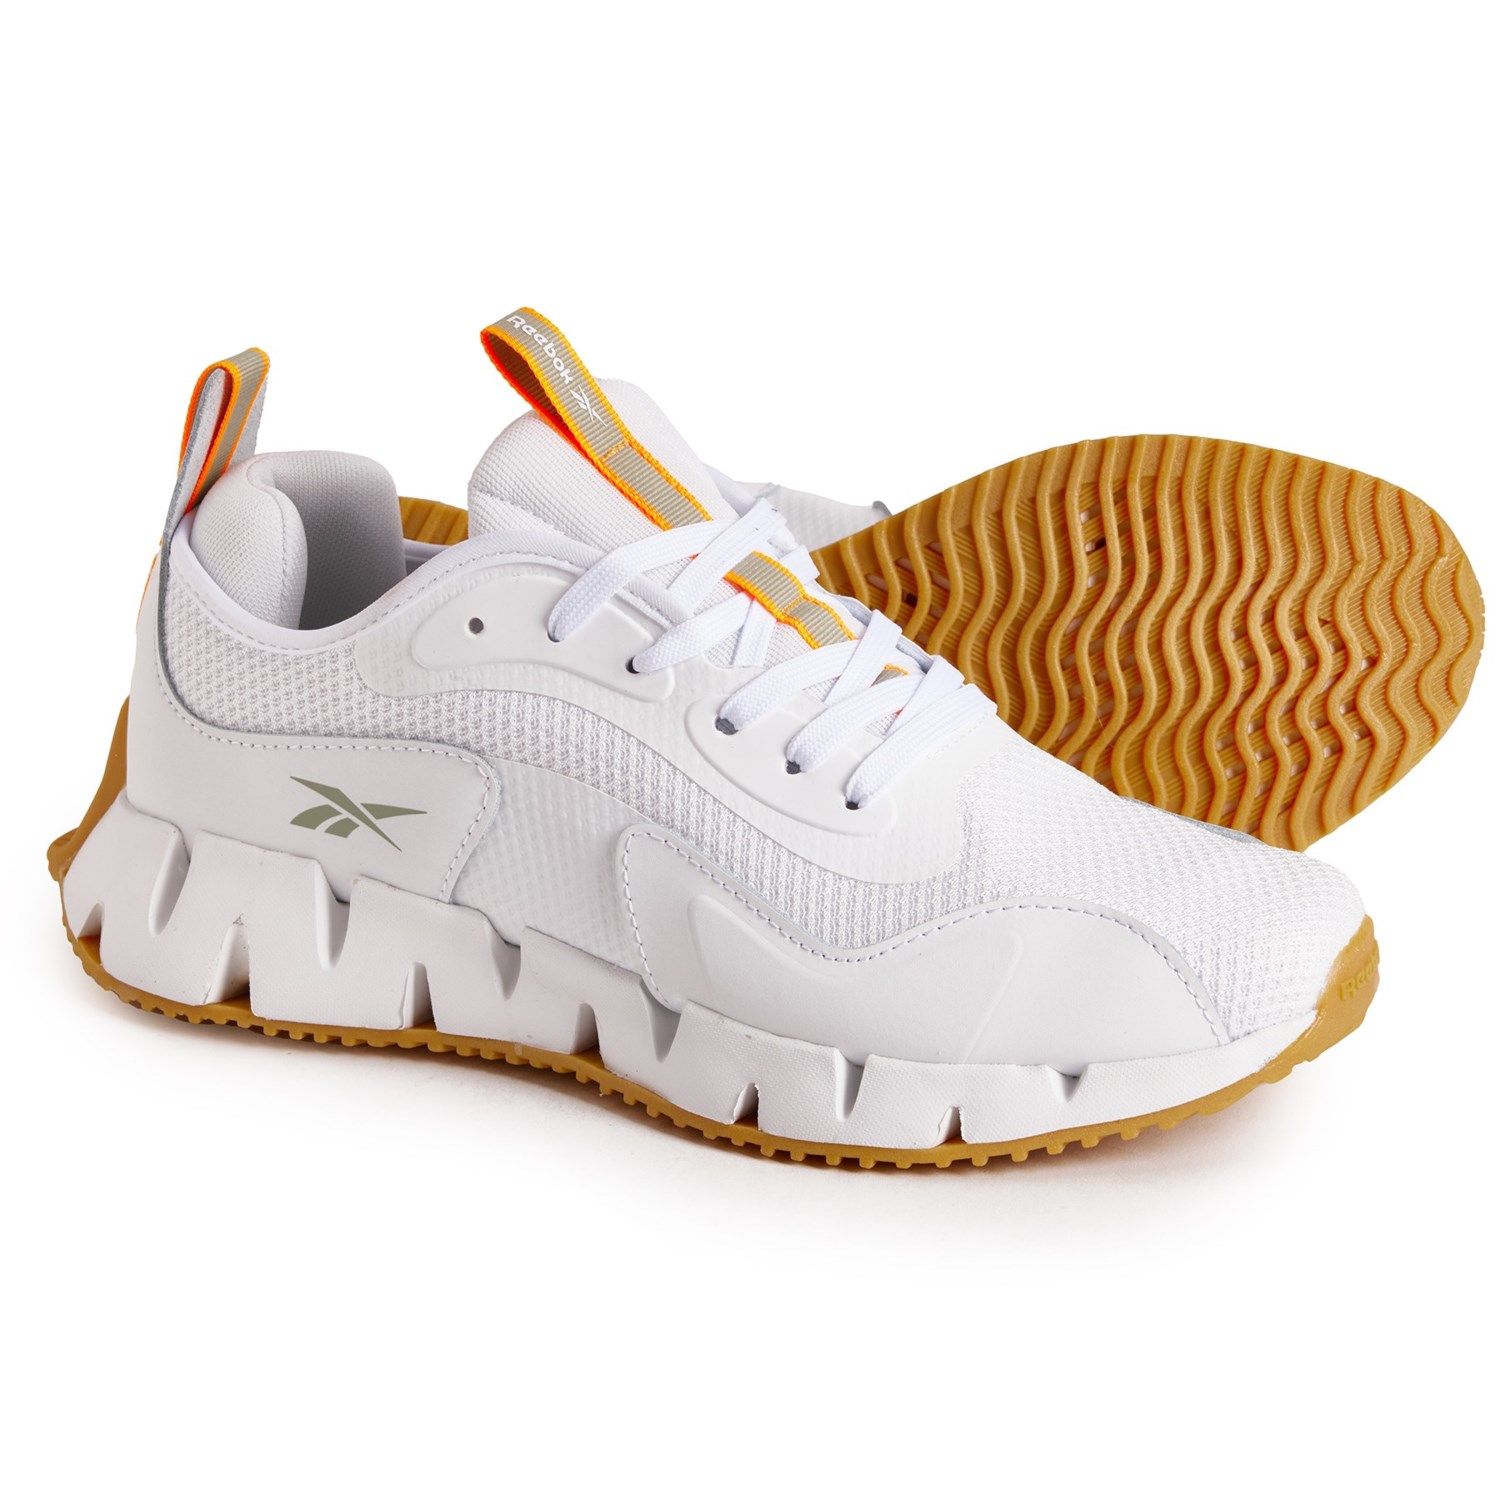 ■商品詳細■ブランドReebokリーボック■商品名Zig Dynamica Running Shoes (For Men) ジグ ダイナミクス ランニング シューズ■商品状態新品未使用・並行輸入品■色Bright White/Vintage Green/Shocking Orange2枚目以降は参考画像となります。詳細合成オーバーレイを備えたリップストップアッパー-通気性のあるメッシュの裏地-紐留め-パッド入りの舌と襟-クッションインソール-FuelFoam ミッドソールが衝撃衝撃、足裏のクッション性とサポートを実現します。-グリップ力があり、エネルギーを分散させる ZigTech アウトソール■備考(取寄) リーボック メンズ ジグ ダイナミクス ランニング シューズ Reebok men Zig Dynamica Running Shoes (For Men) Bright White/Vintage Green/Shocking OrangeReebok リーボック メンズ シューズ スニーカー スポーツ ブランド ランニング マラソン カジュアル ストリート 大きいサイズ ビックサイズsi-3mmvk